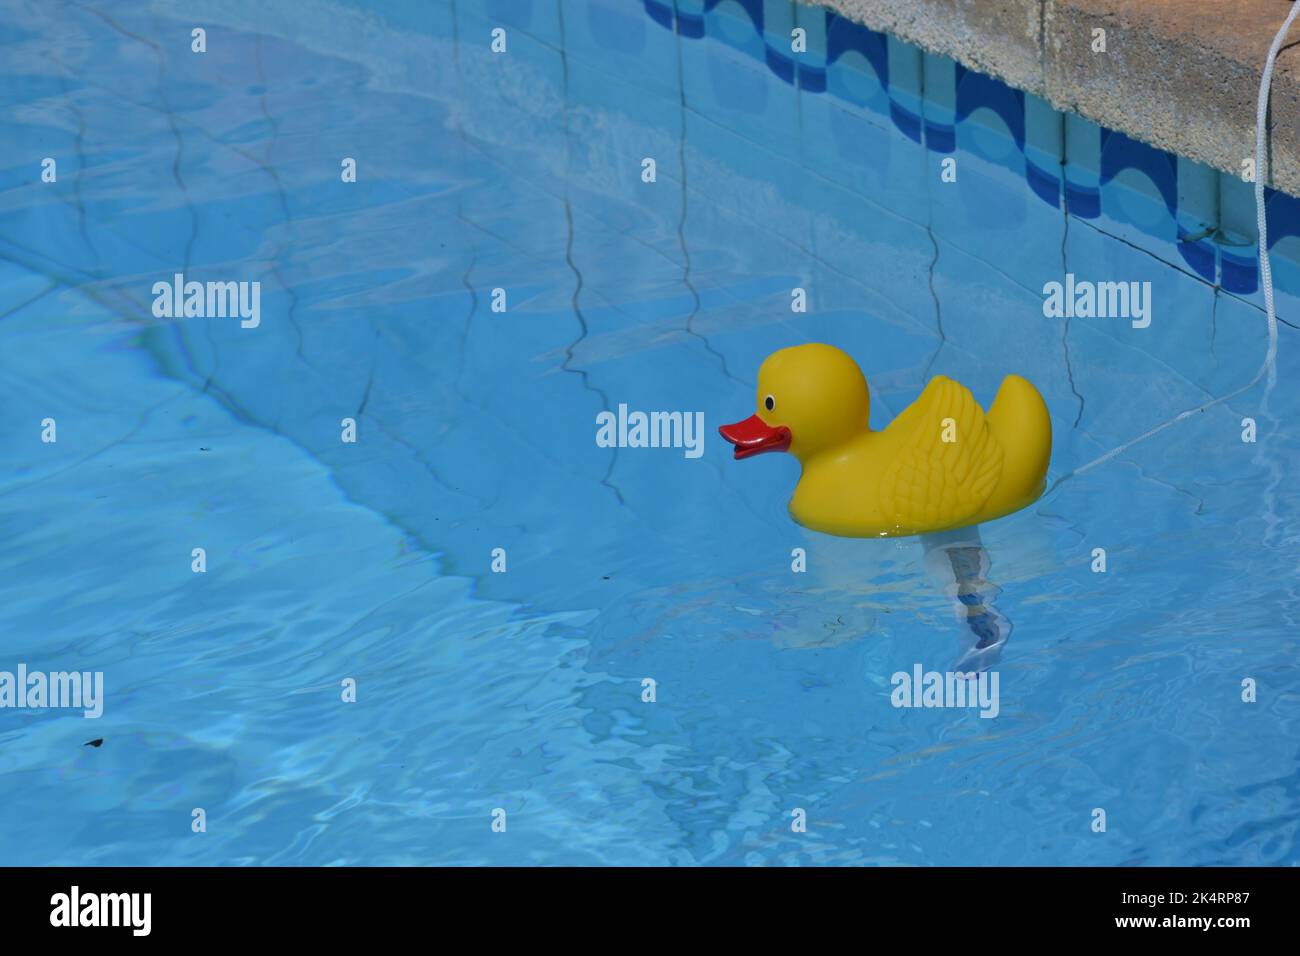 canard de caoutchouc dans la piscine quitscheente Banque D'Images